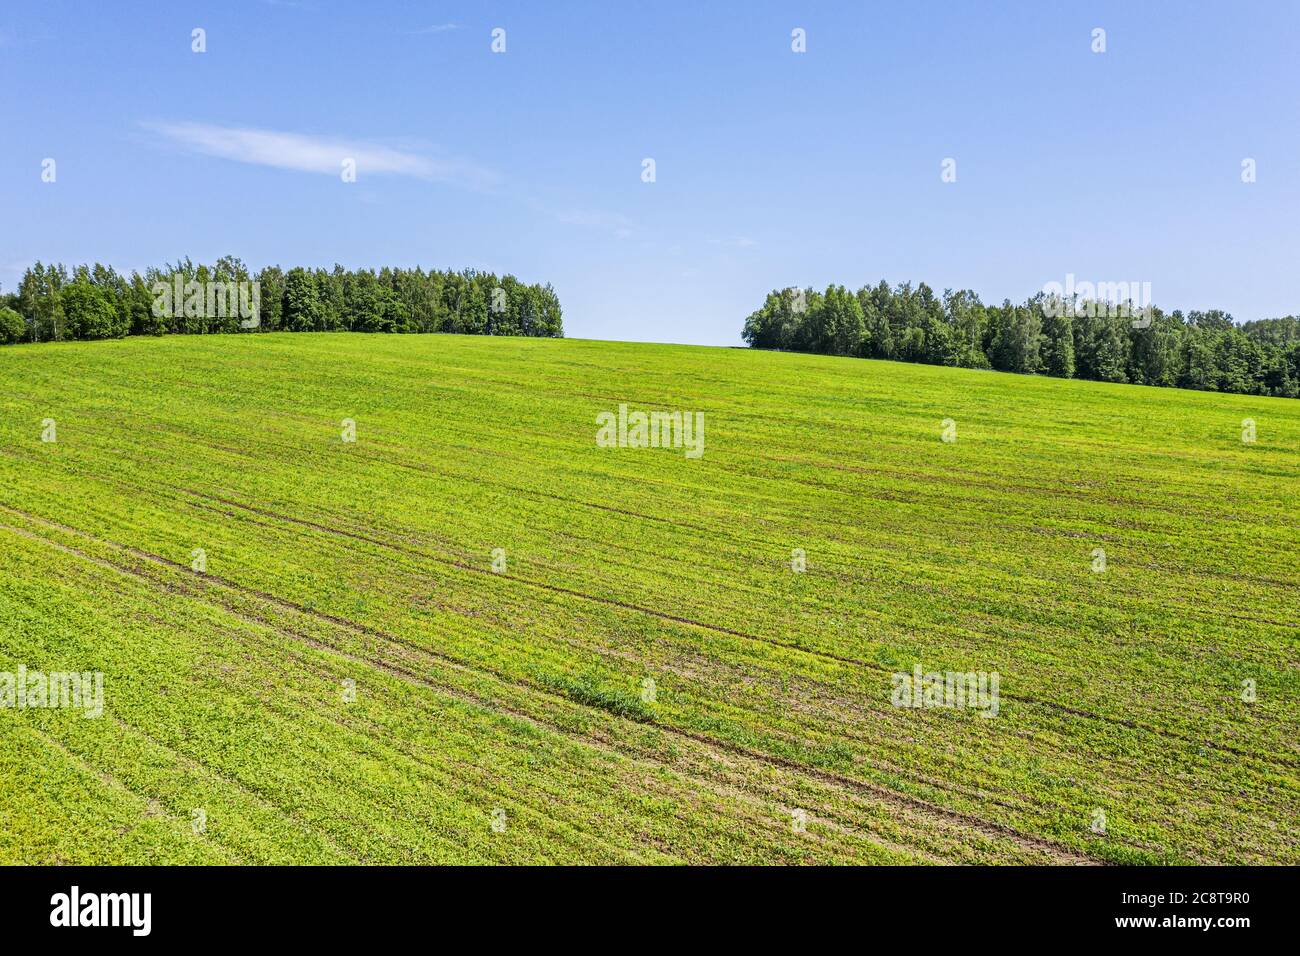 paesaggio rurale estivo con campi coltivati e verde foresta in giornata di sole. fotografia drone Foto Stock